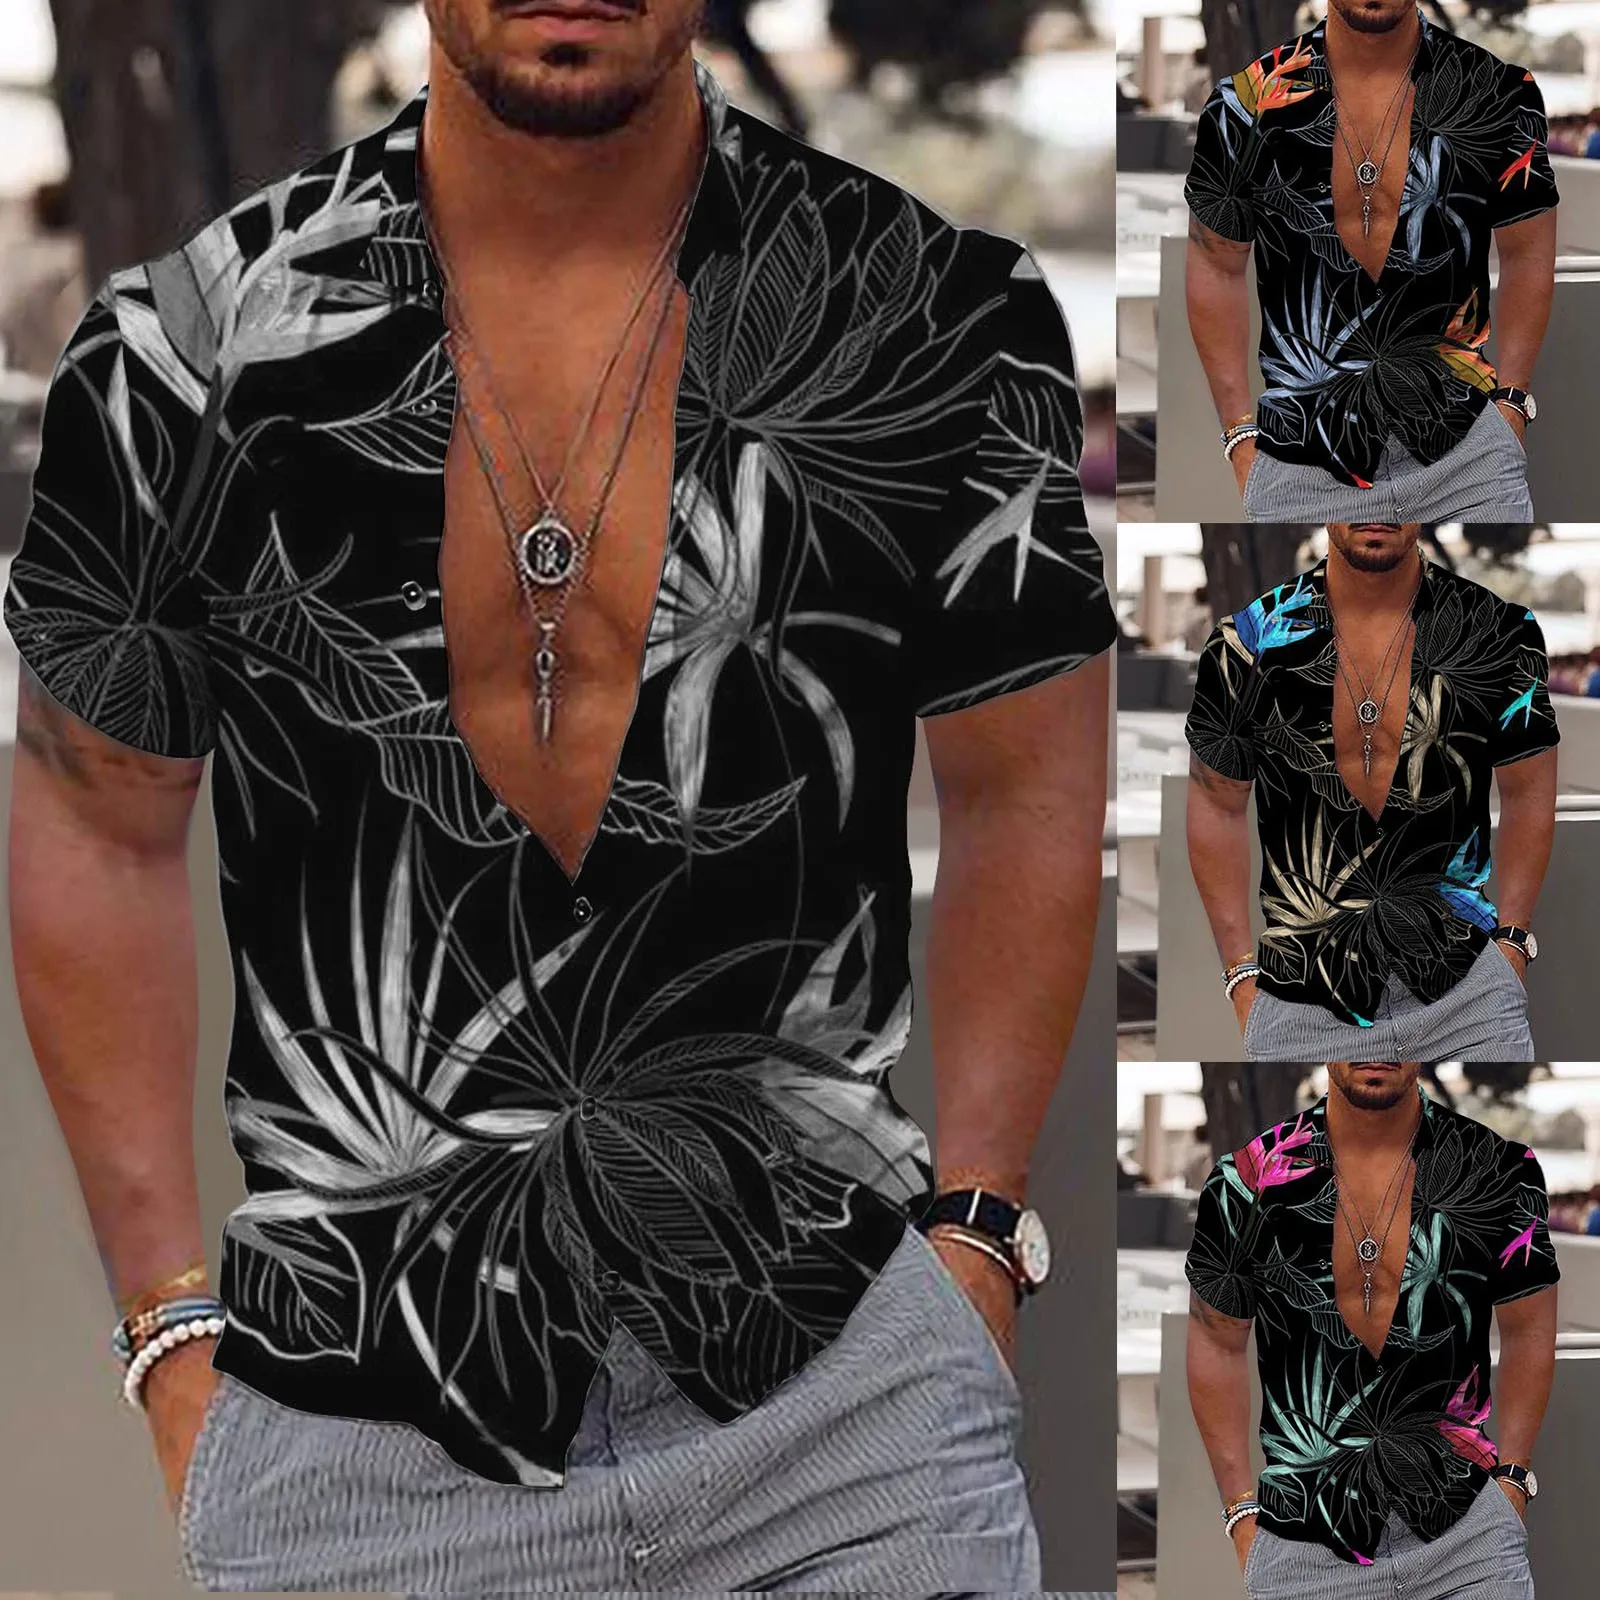 

Men's Hawaiian Shirt Fun Short Sleeve Button Up Shirt Tropical Holiday Beach Shirt Vetements Homme футболка мужская Camisas